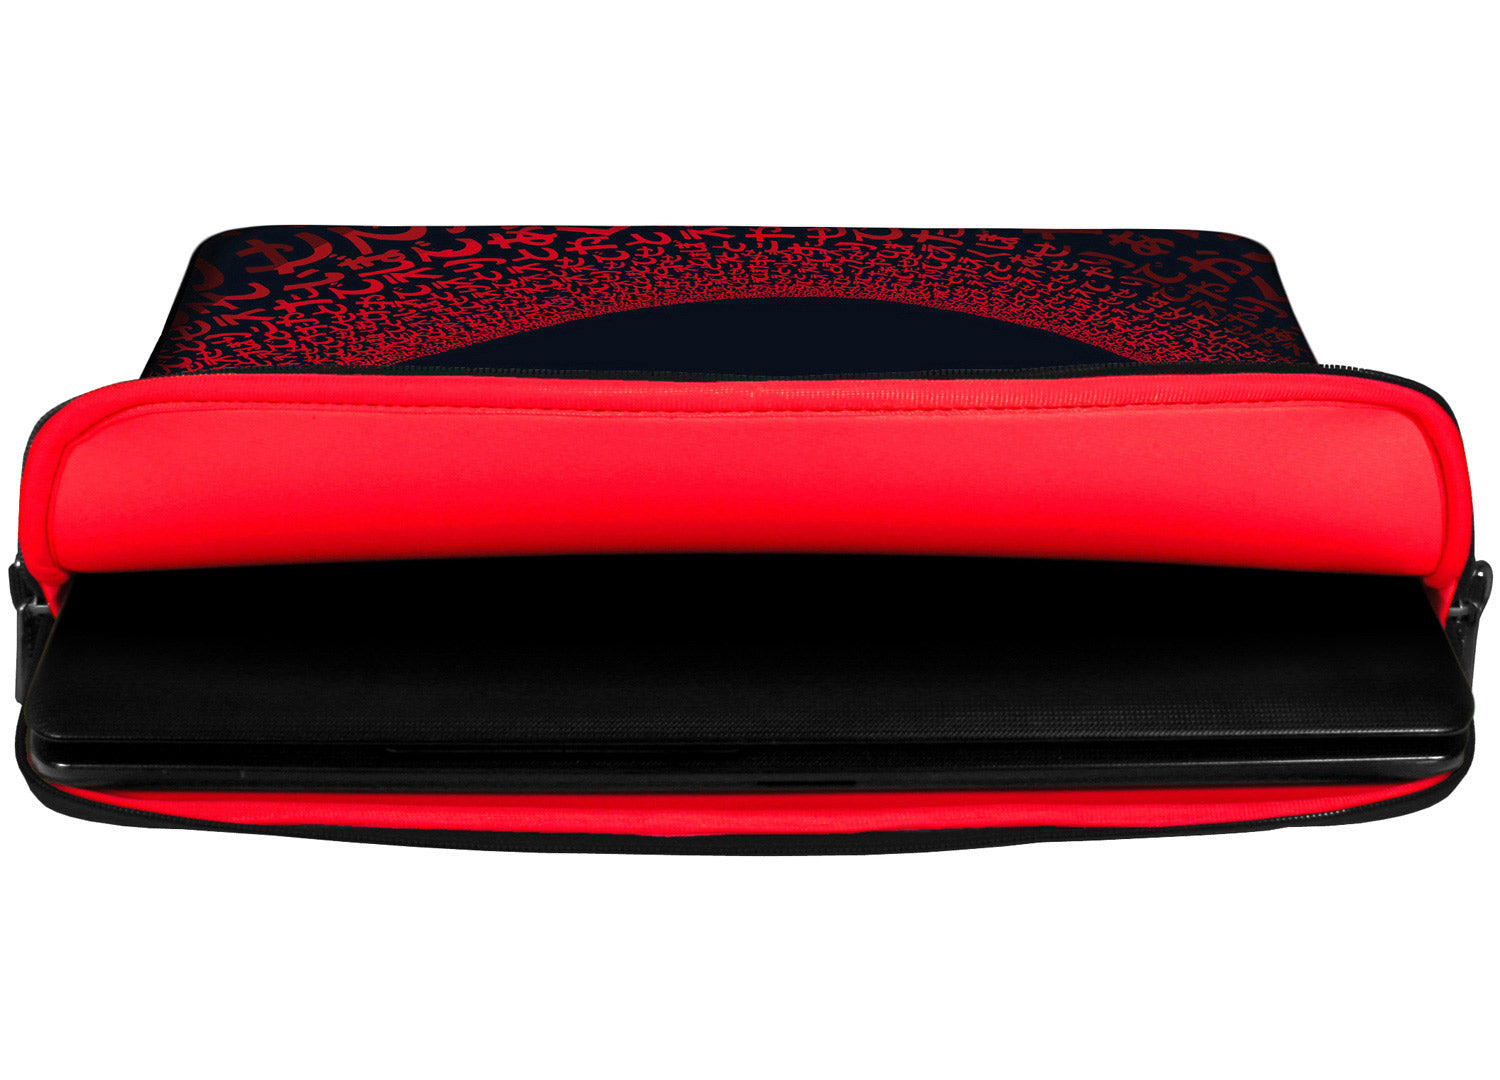 Innenansicht mit Schutzlippen der LS109 Red Matrix Designer Laptop Tasche in rot aus wasserabweisendem Neopren